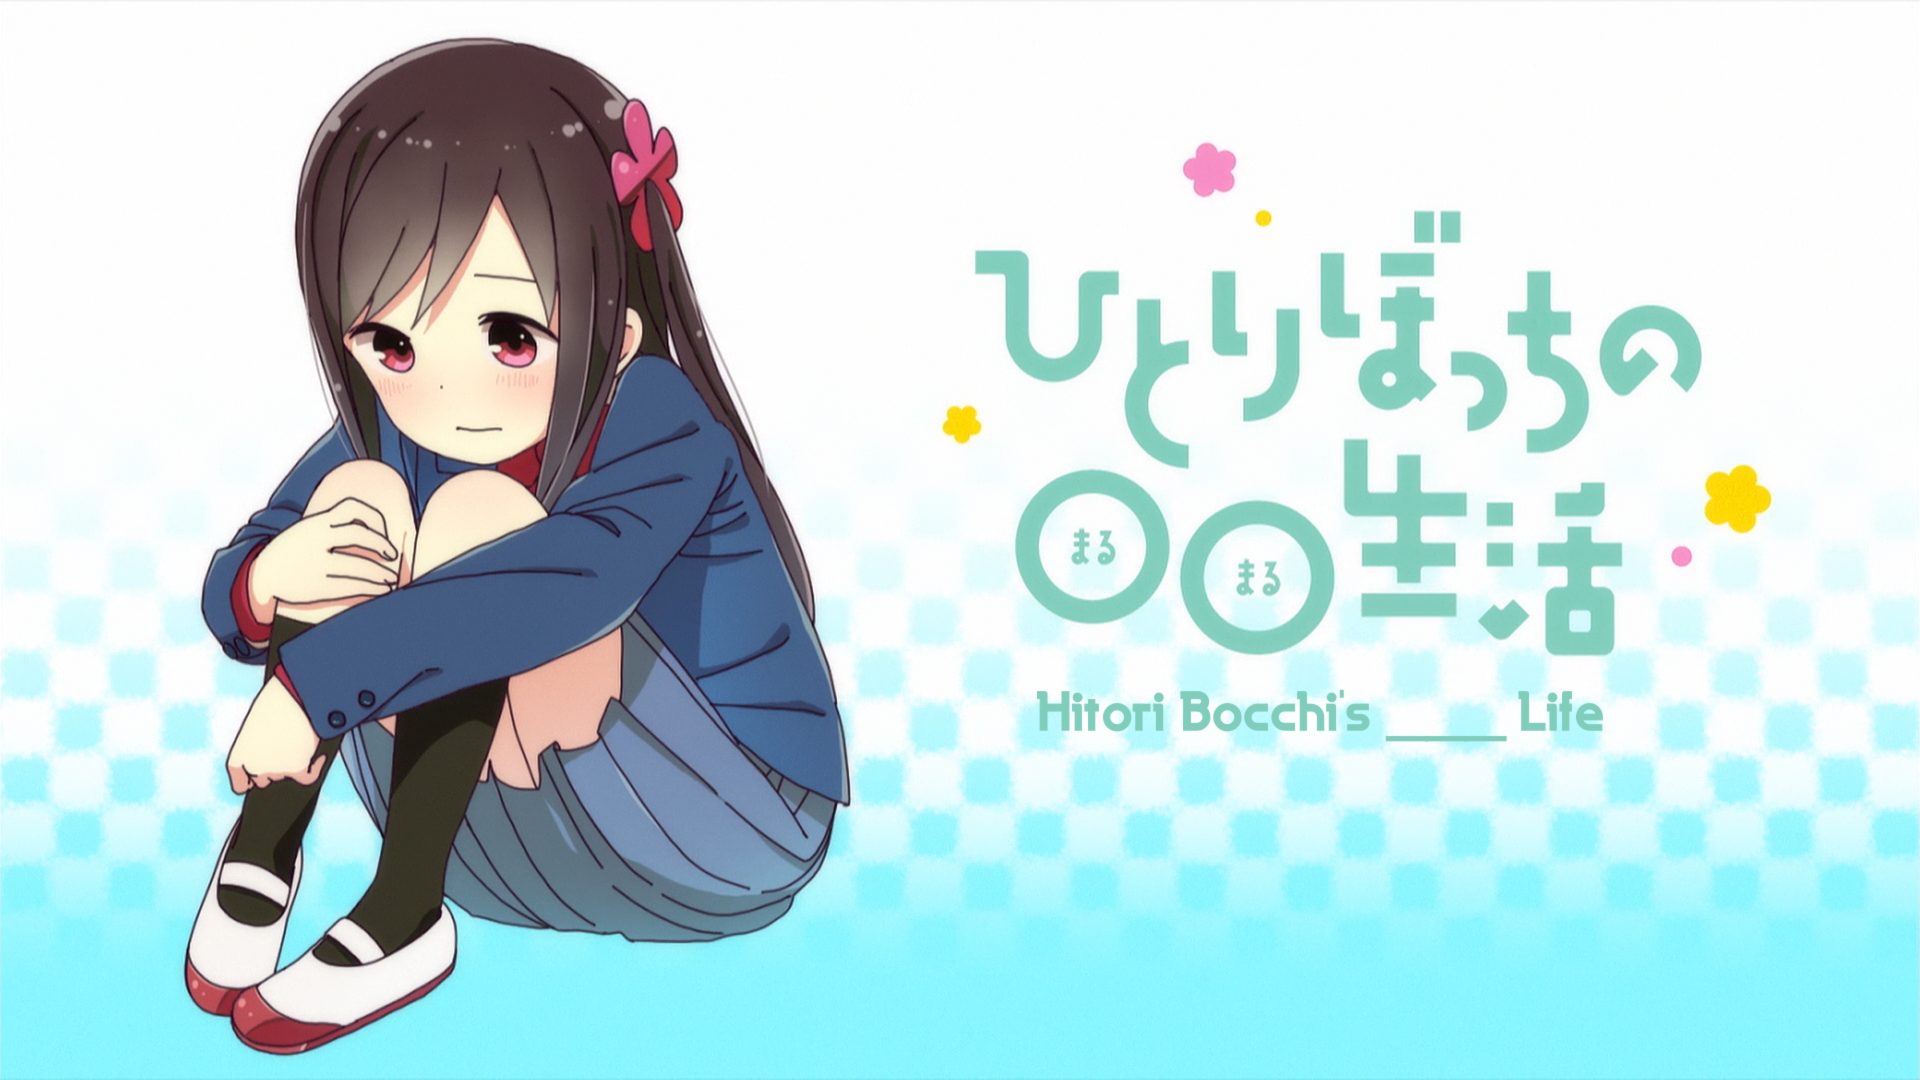 Rewatch] Hitoribocchi no Marumaru Seikatsu: Episode 2 : r/anime